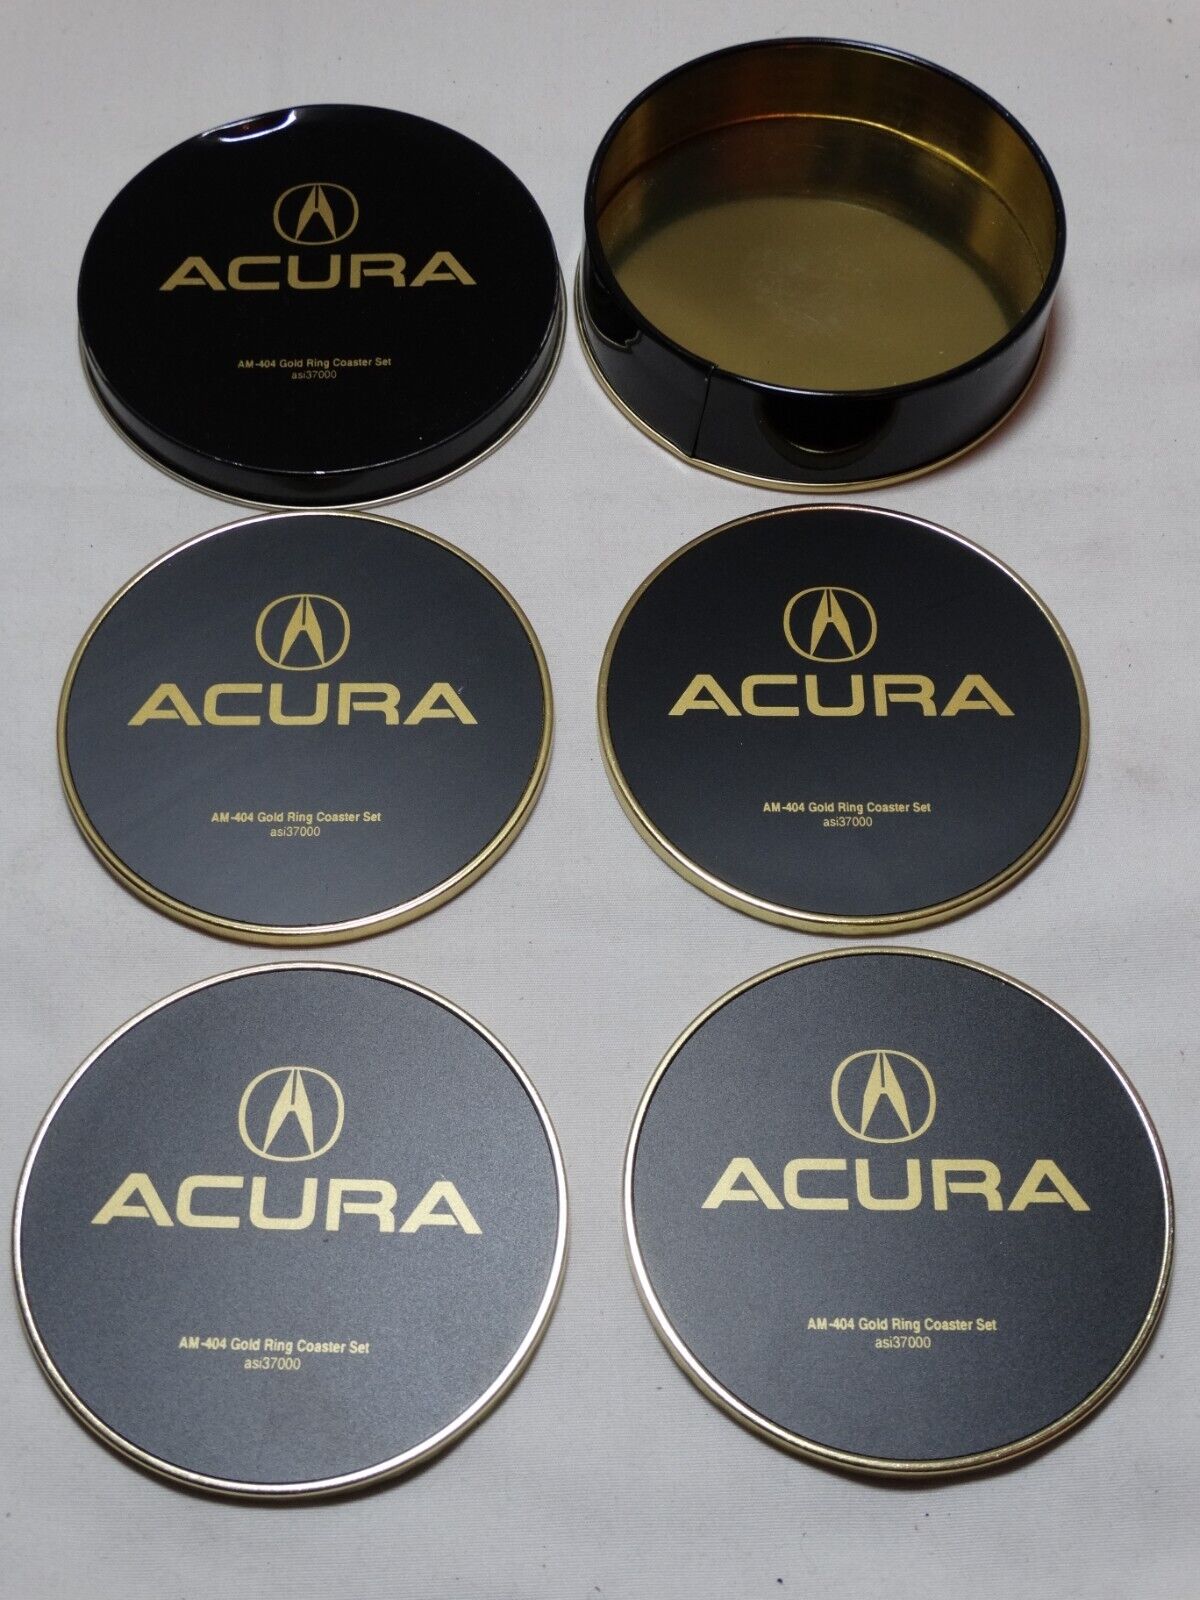 Rare Acura Coasters NIB Early 1990s